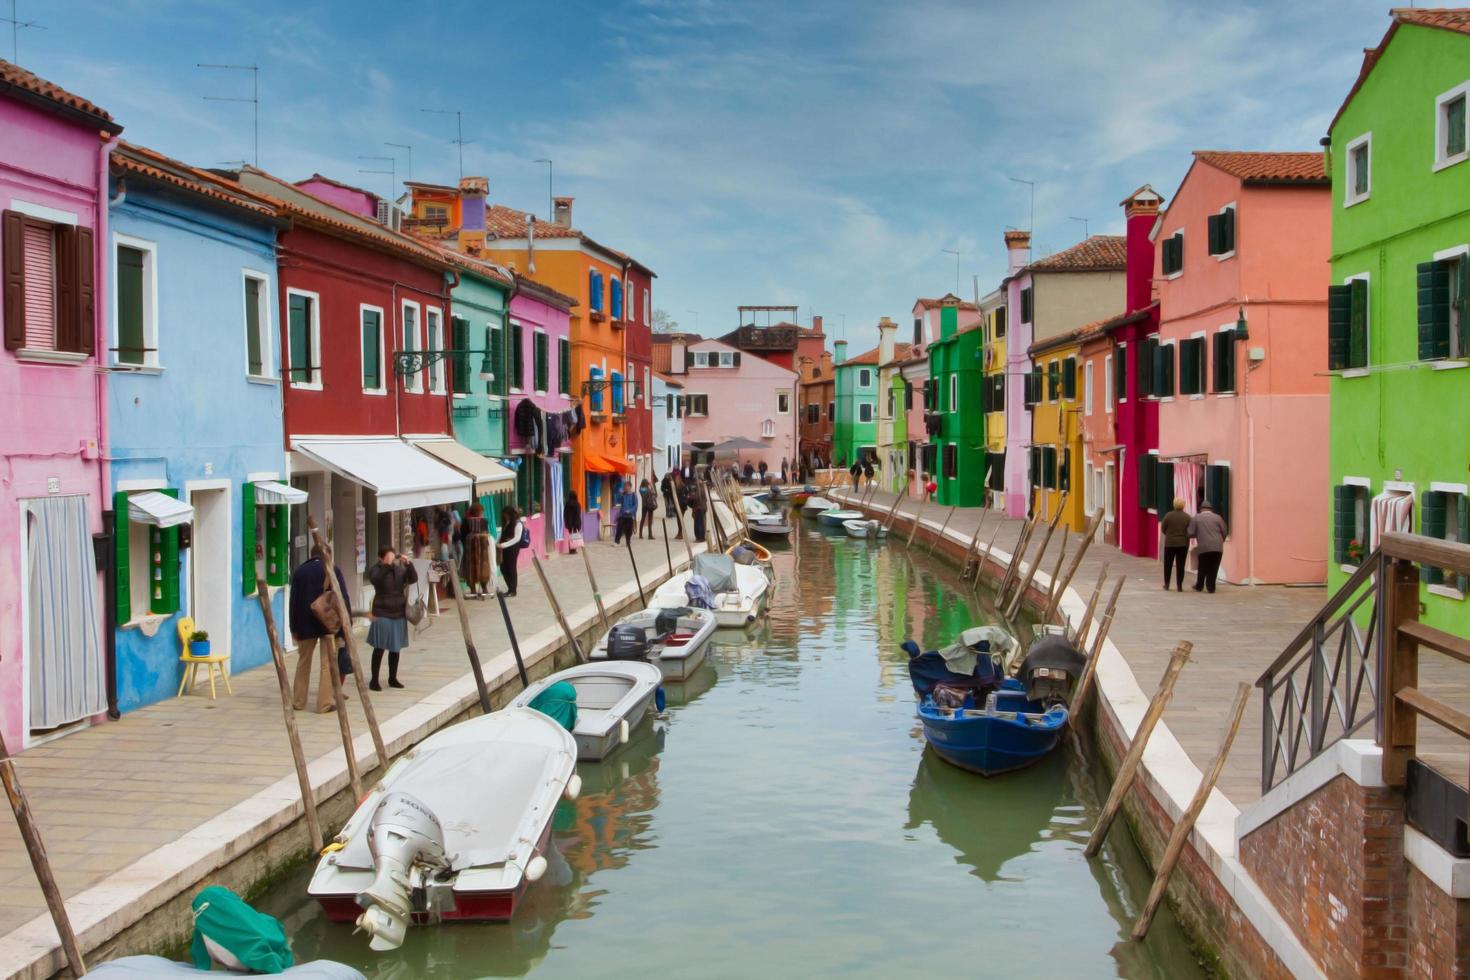 paesaggio urbano di case colorate nell'isola di burano italia foto